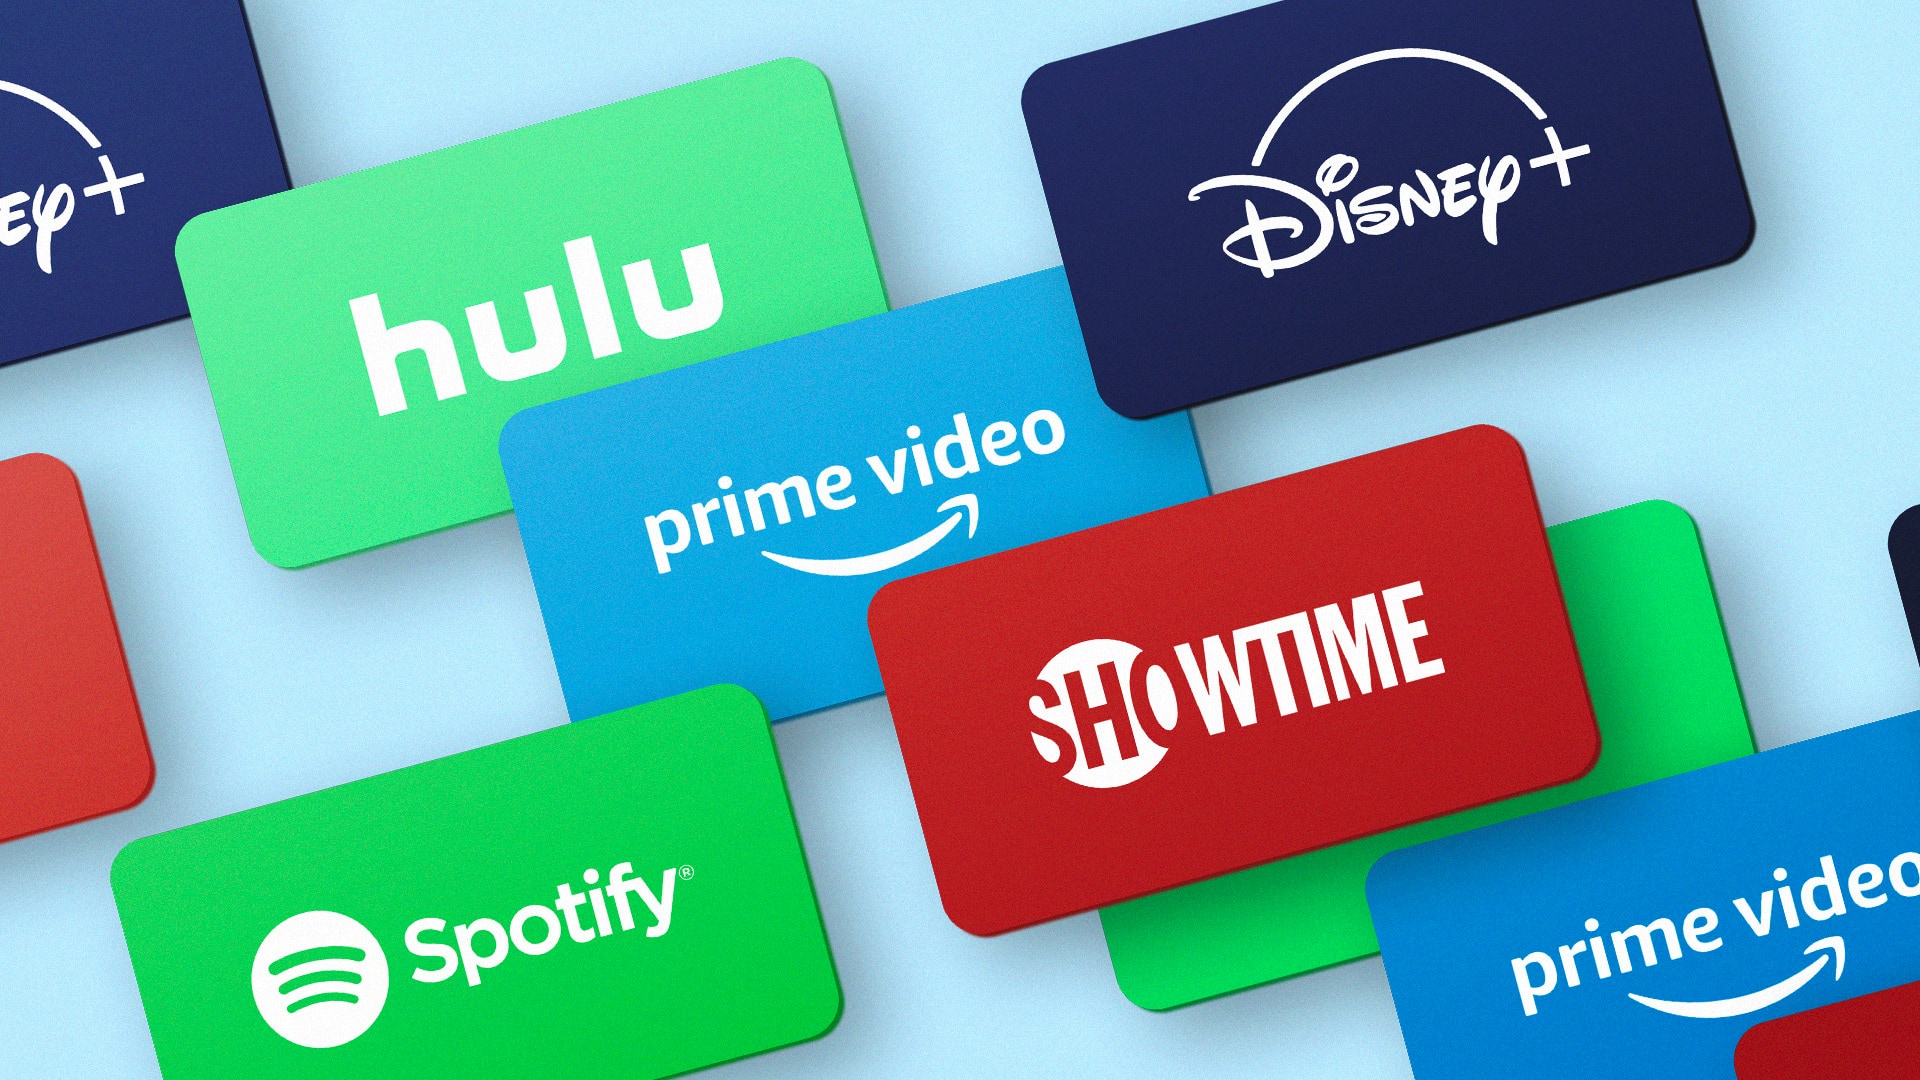 Hulu Spotify Showtime Disney Plus Prime Video Logos em um fundo azul